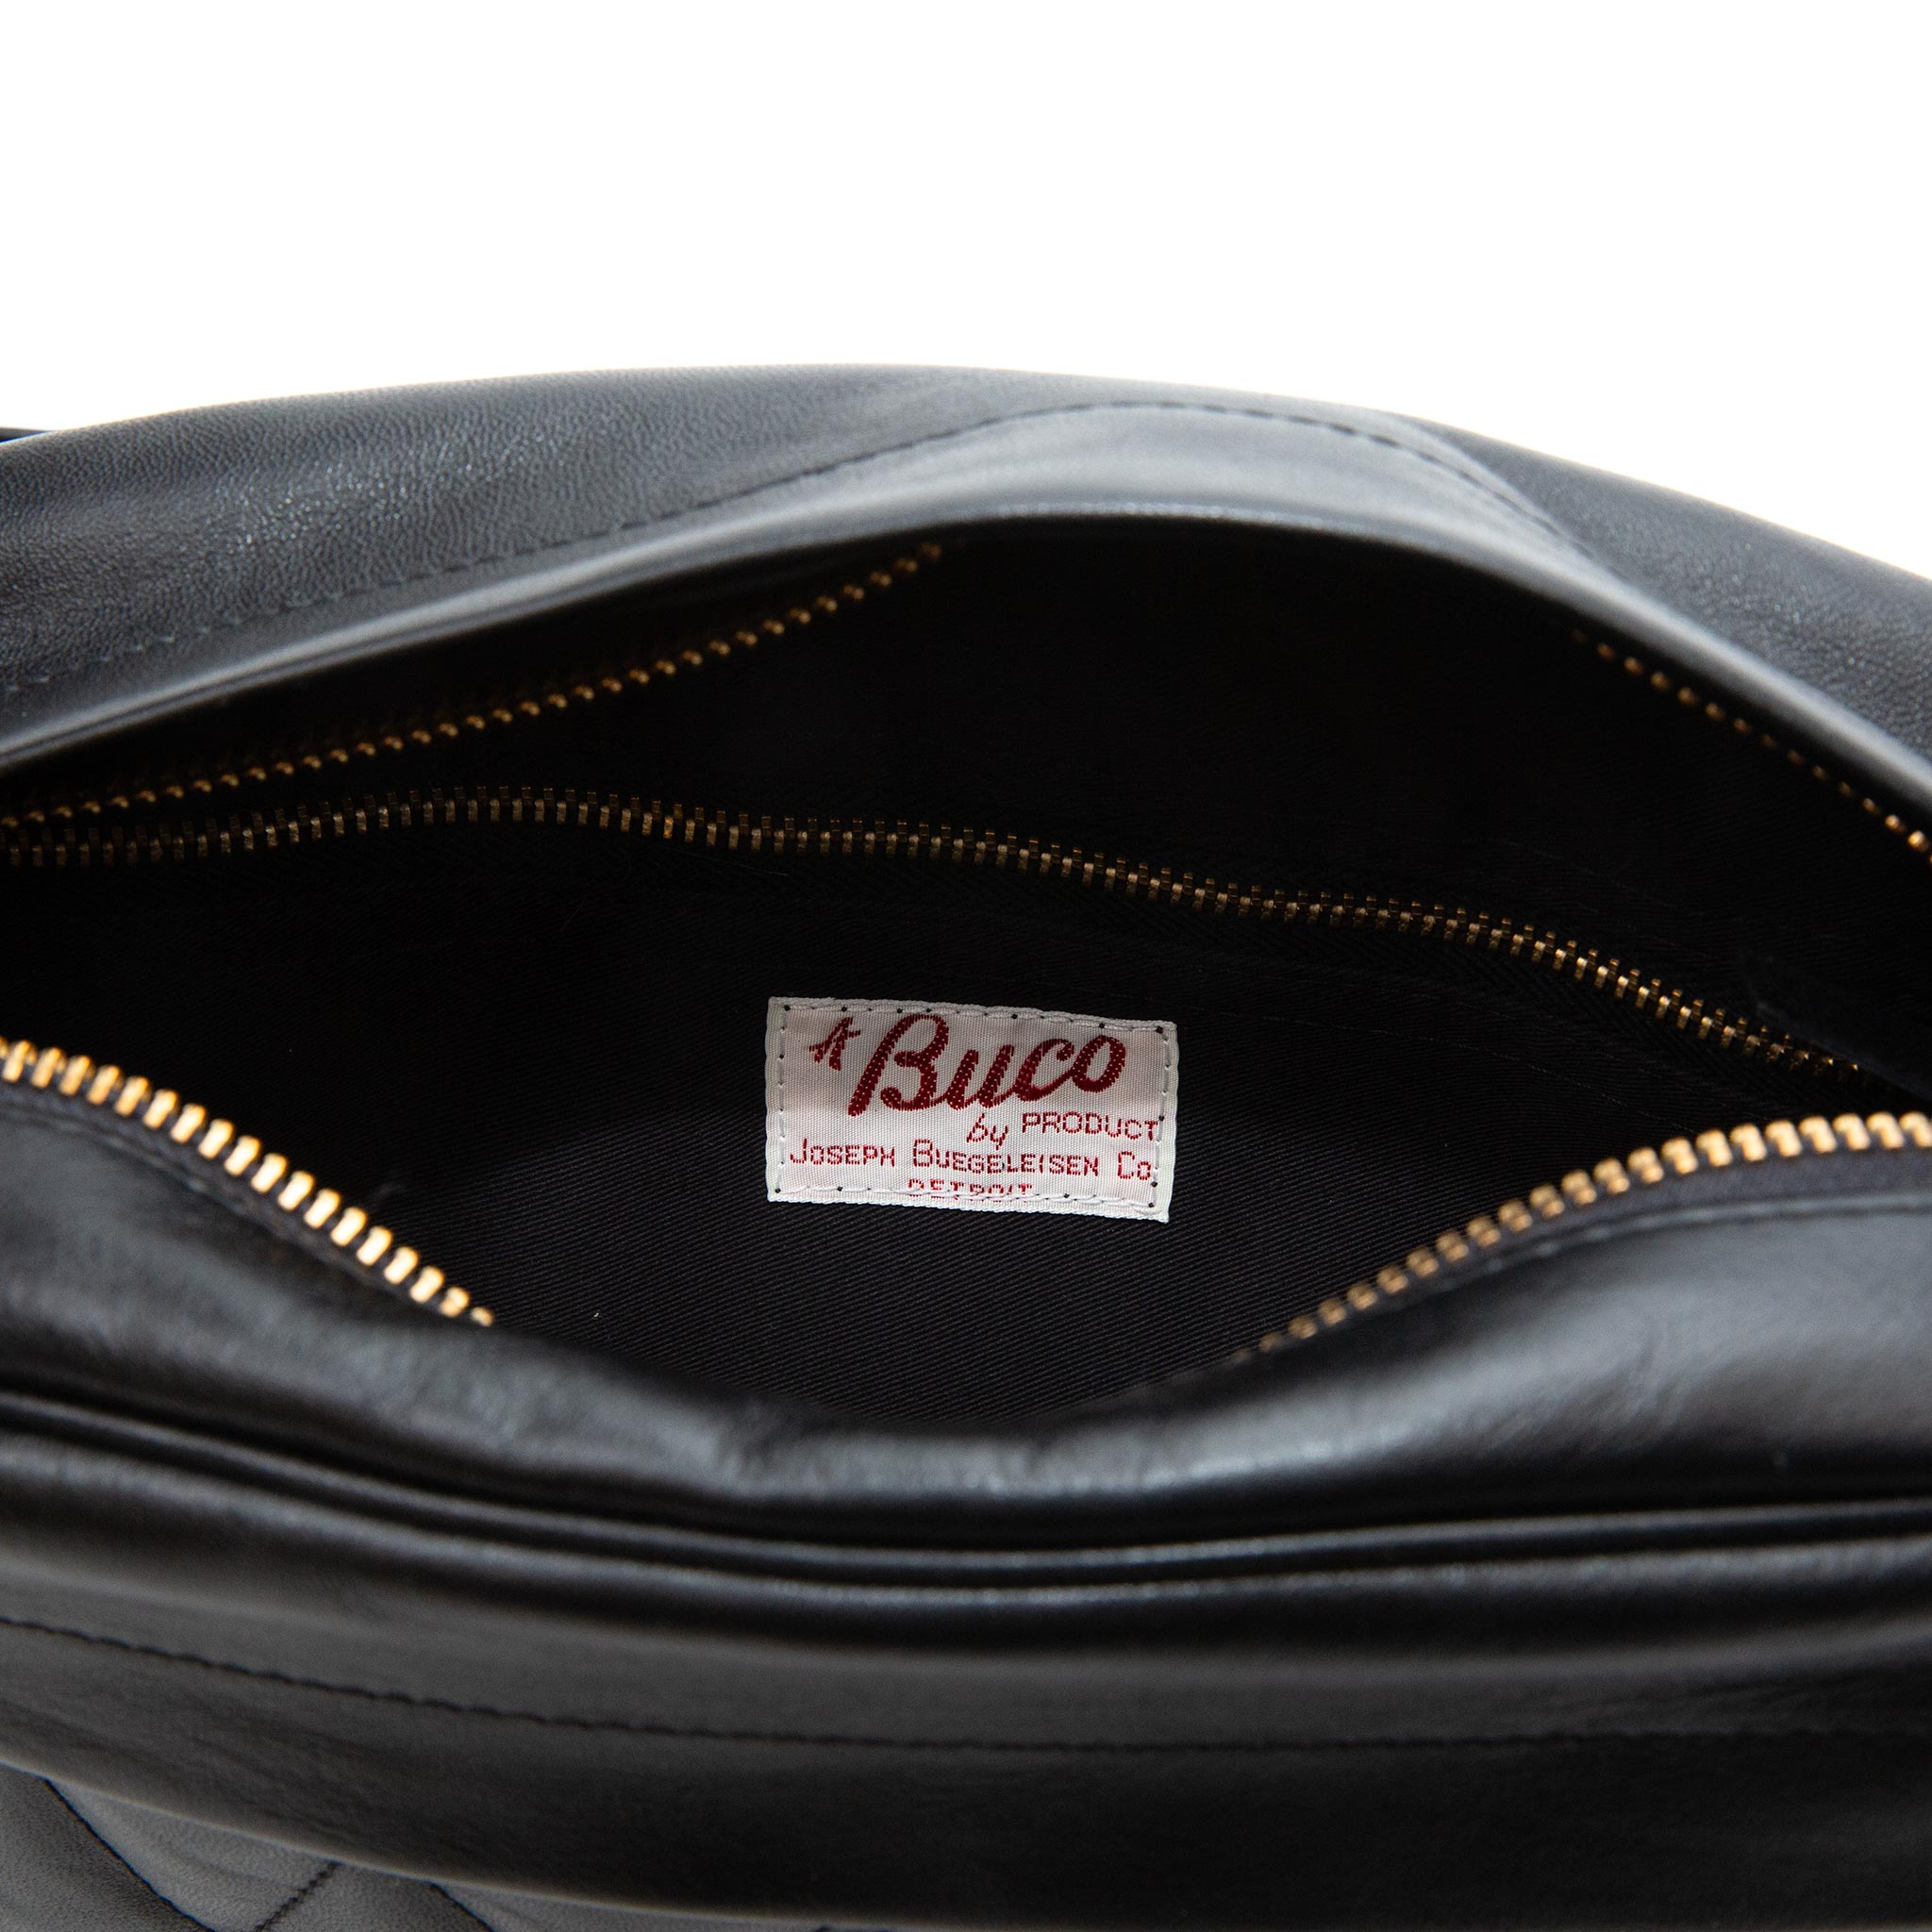 The Real McCoy's BA17111 Buco Horsehide Leather Shoulder Bag Black